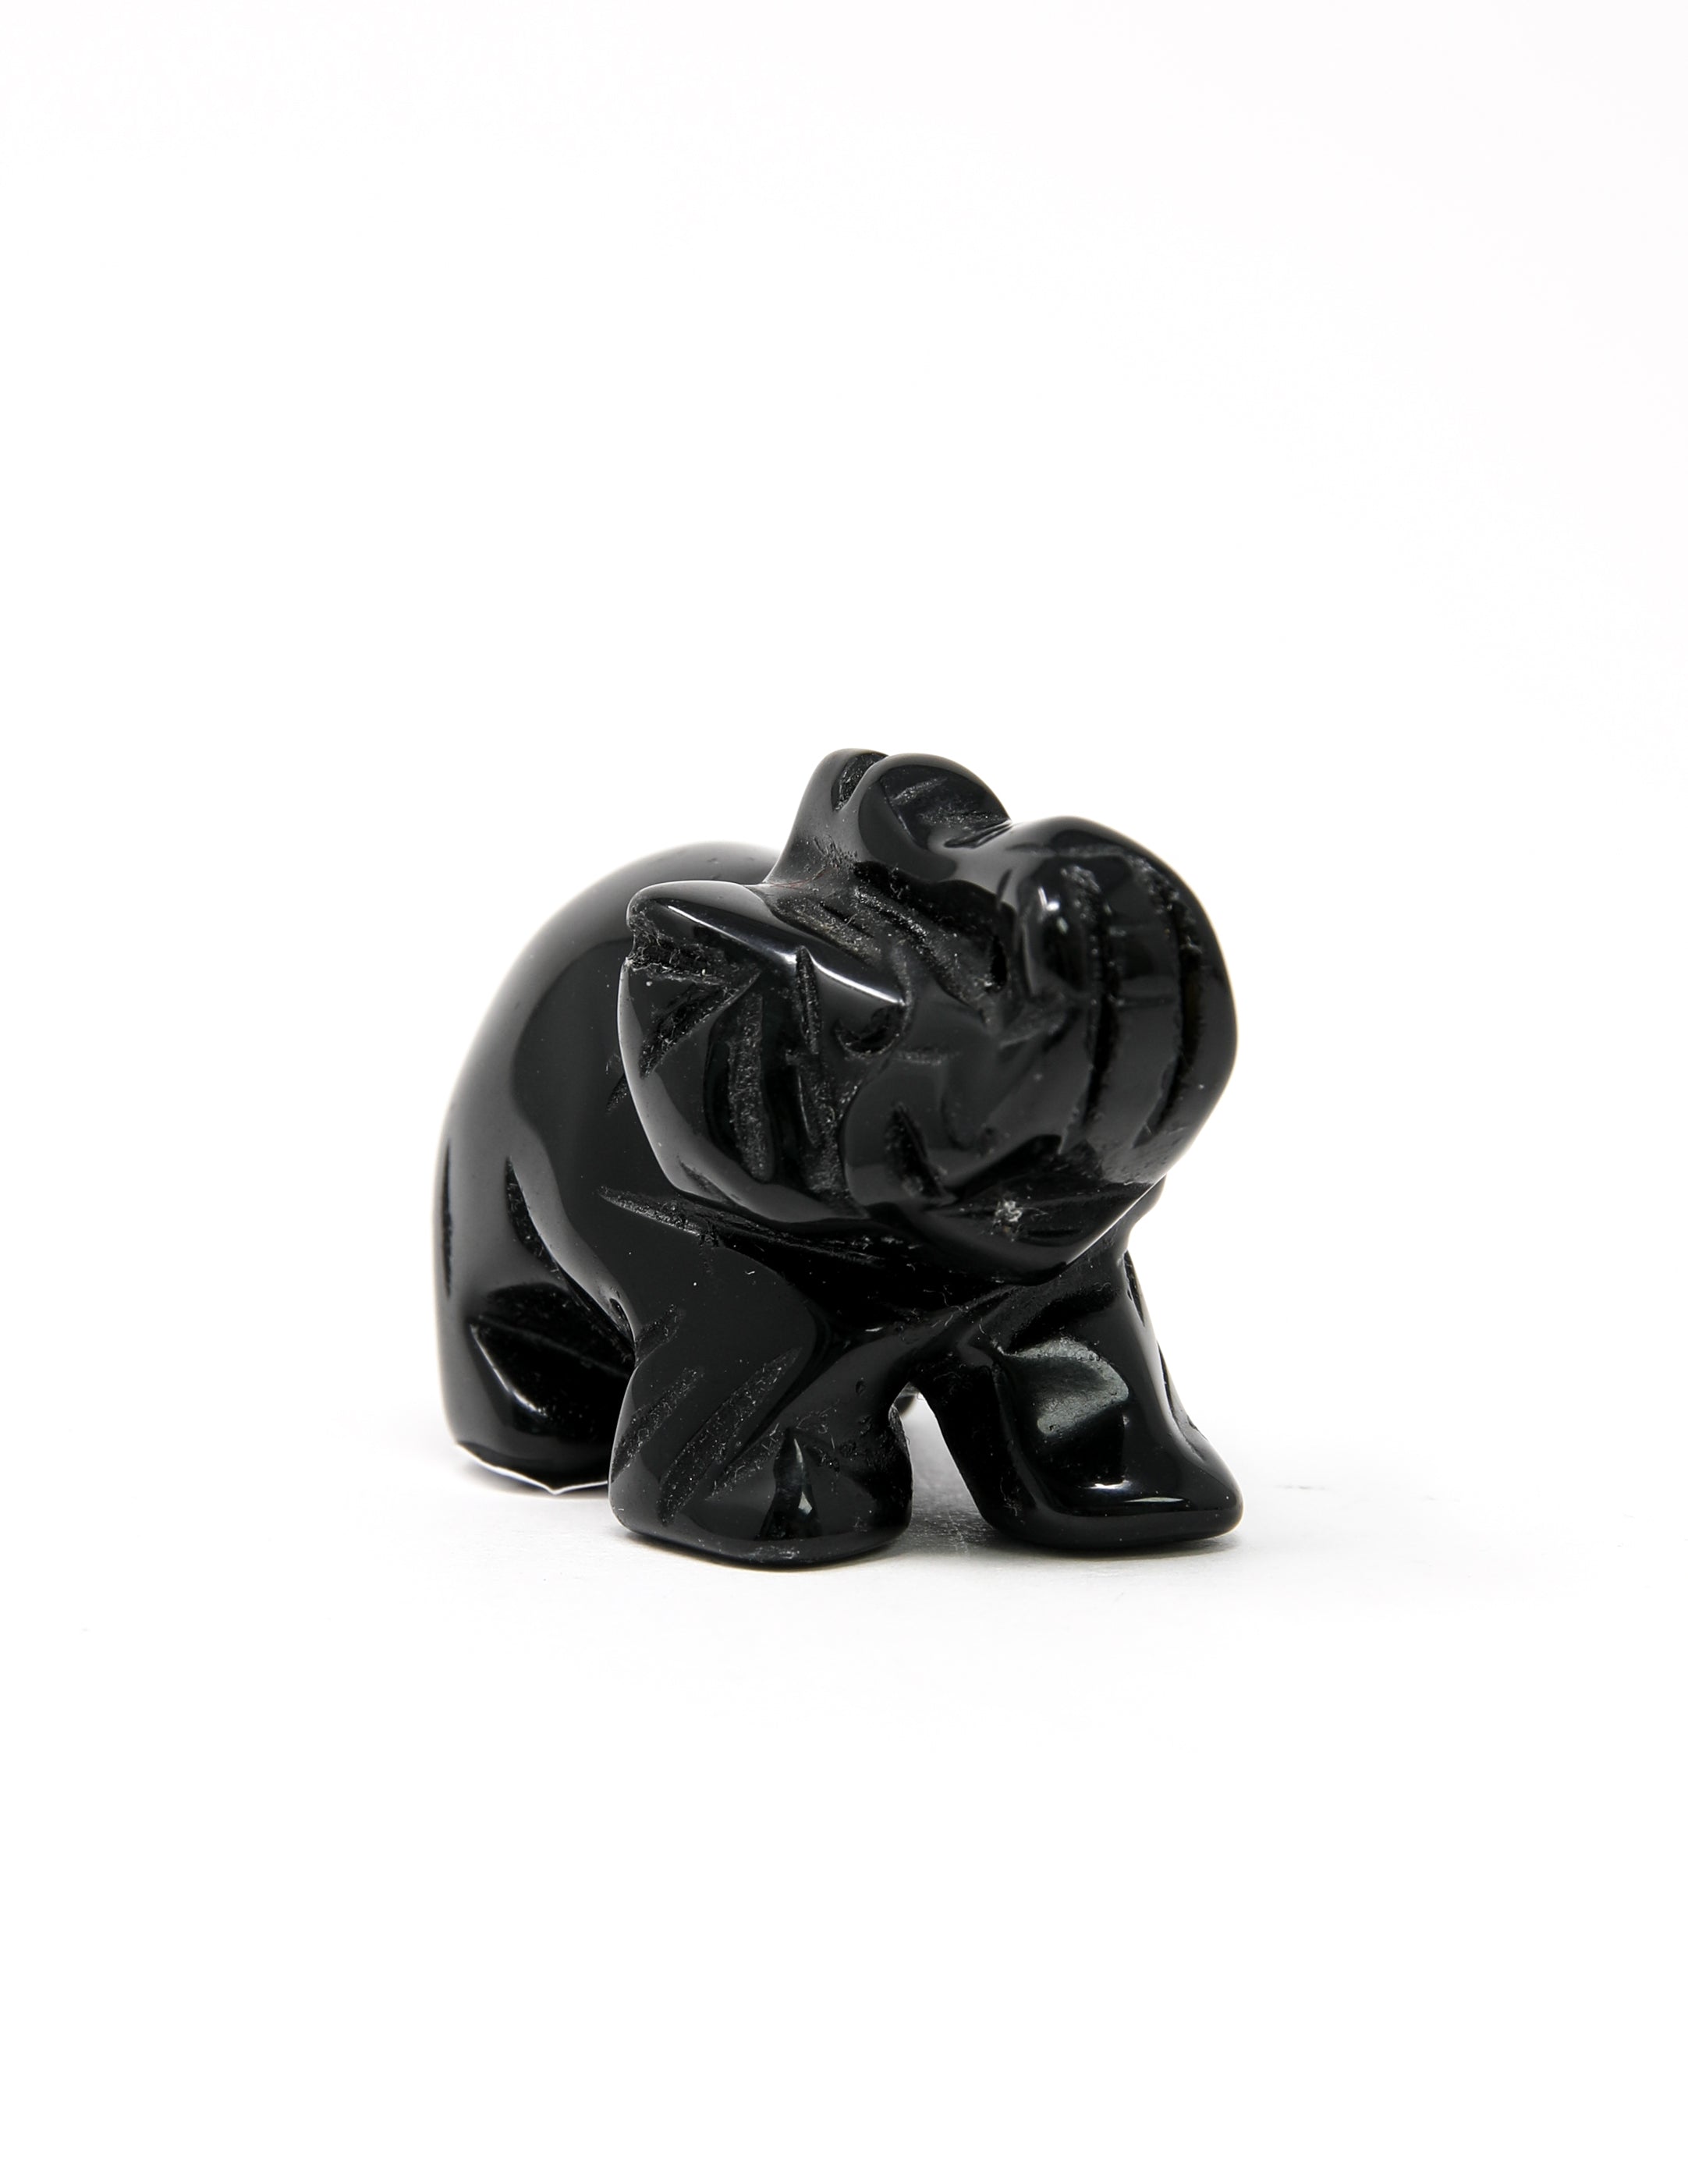 Black Obsidian Elephant